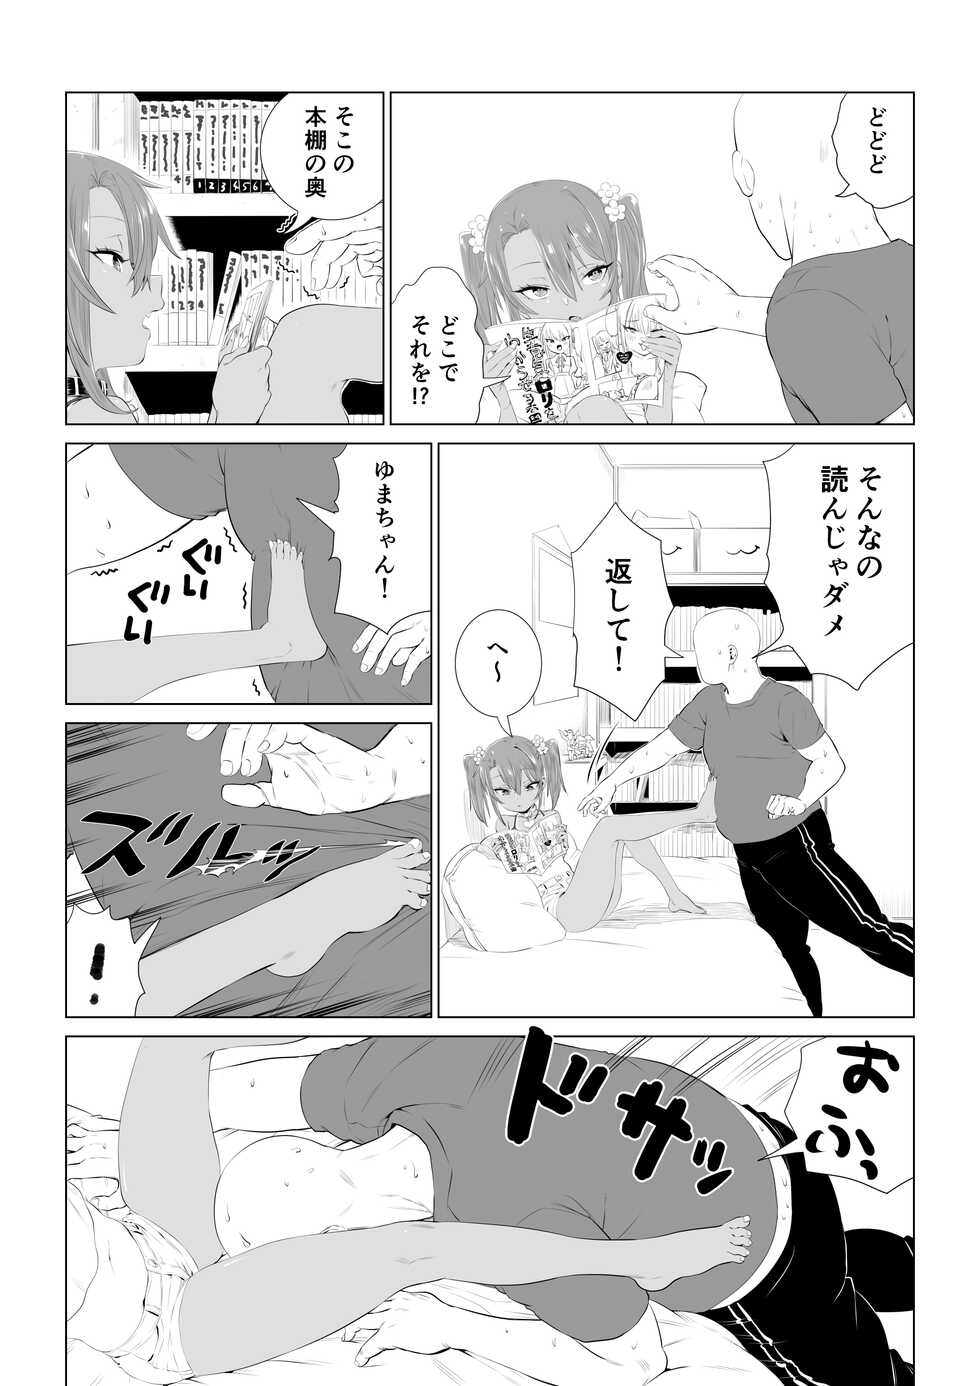 [Ebisujima Misato] Yuma-chan's Web manga [Ongoing] - Page 28